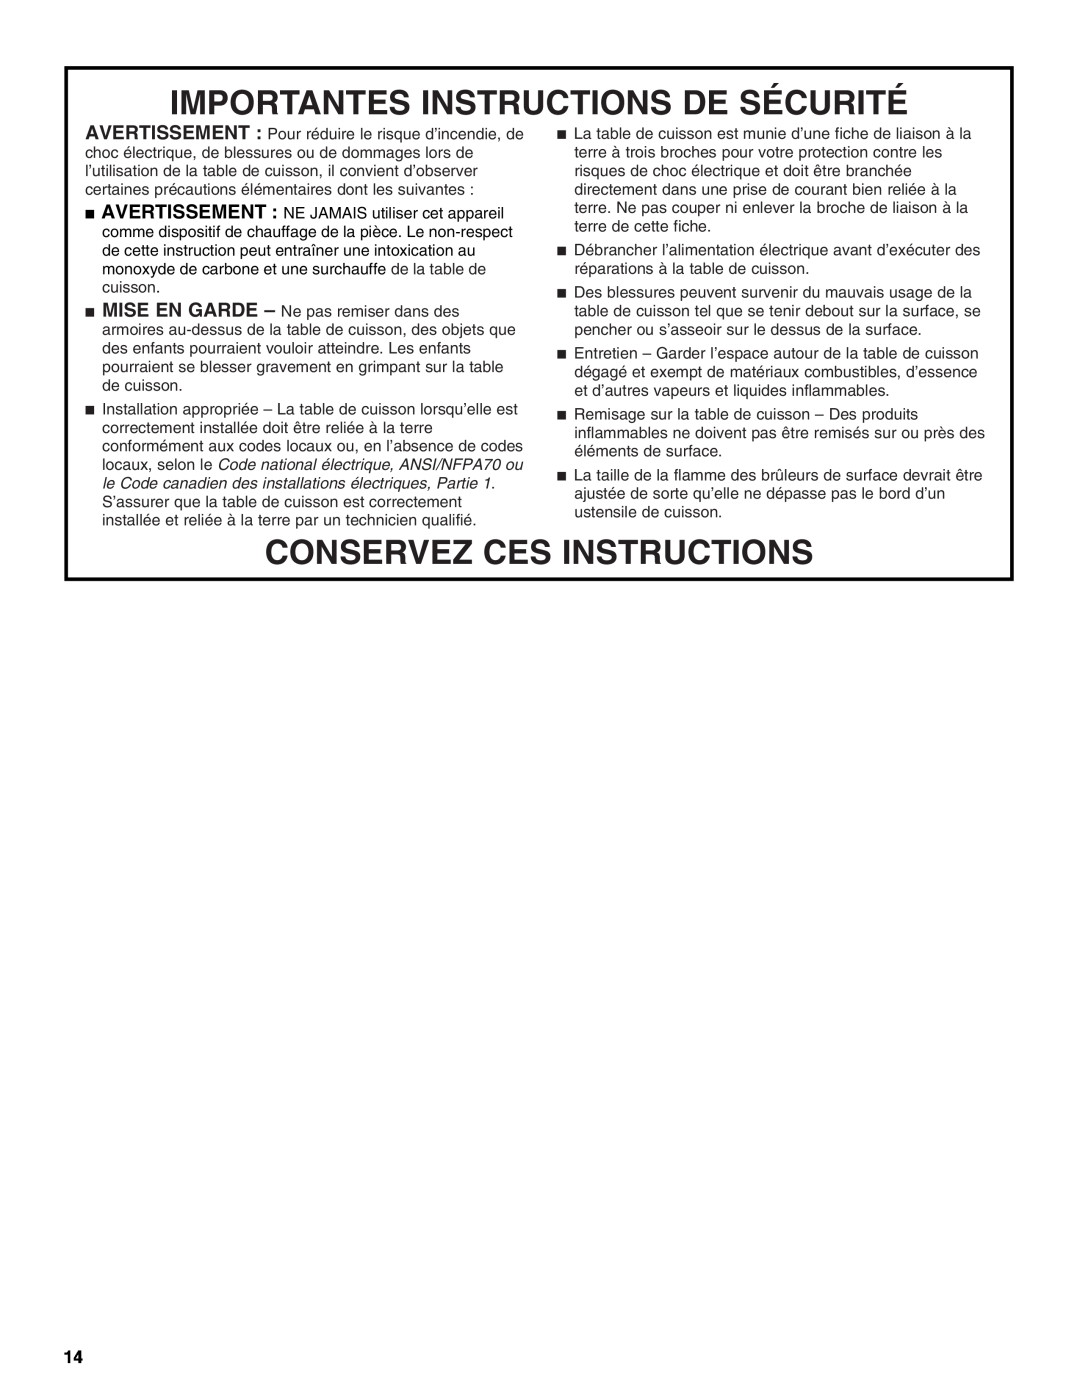 Whirlpool GLS3675, GLS3074 manual Importantes Instructions De Sécurité, Conservez Ces Instructions 